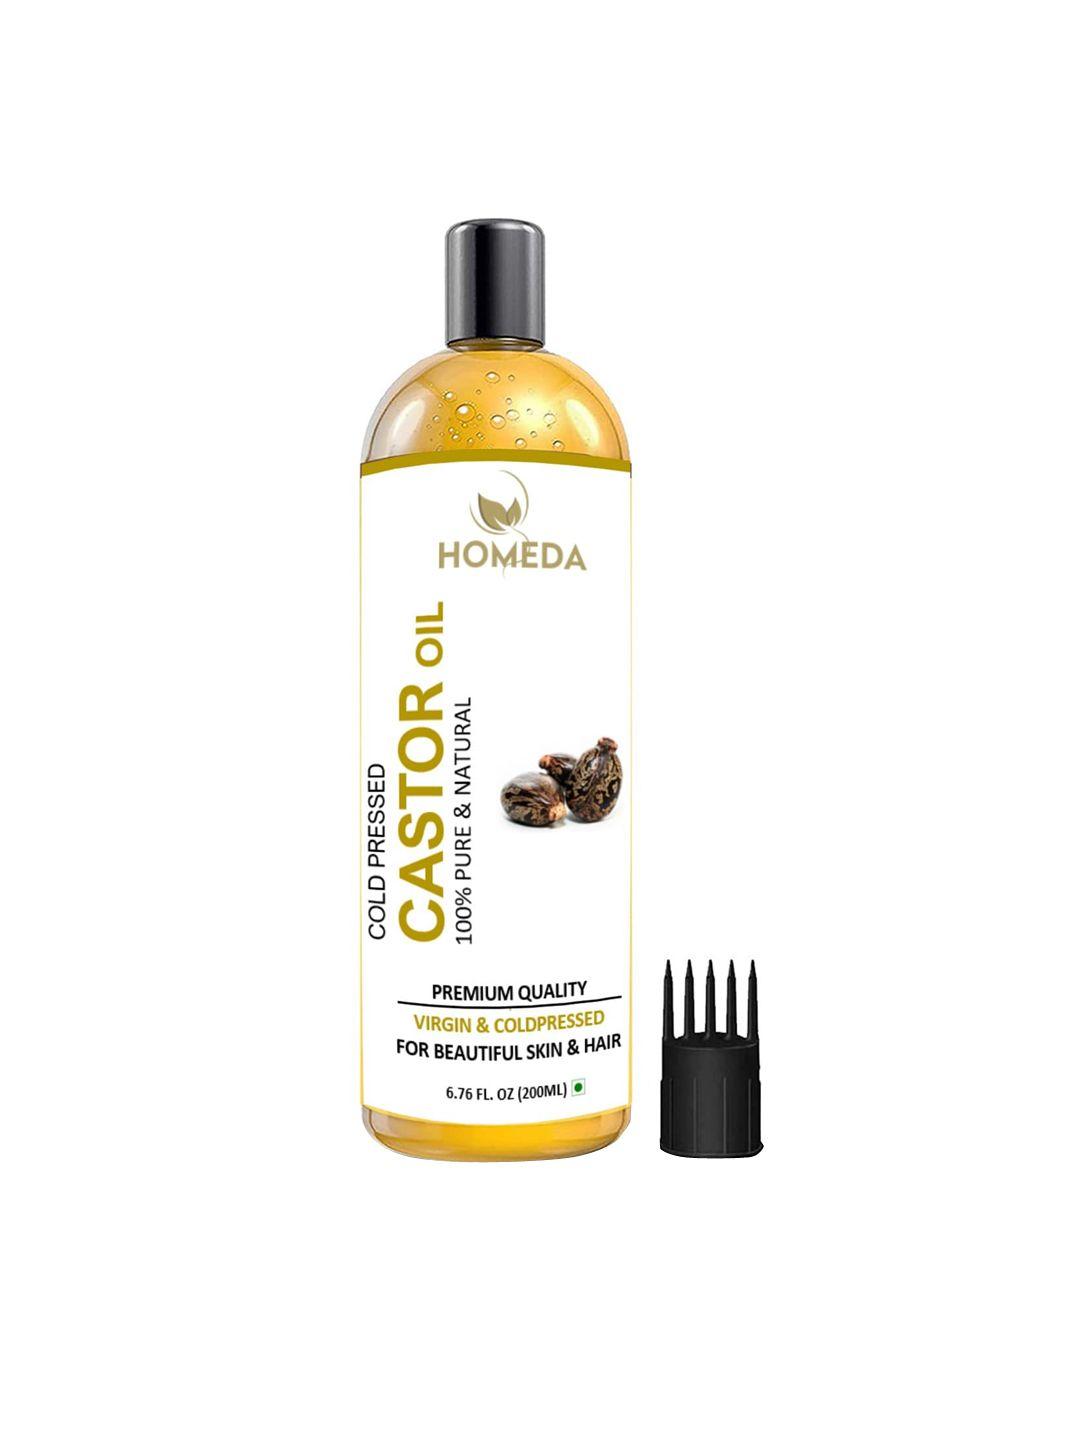 shudh online cold pressed castor oil for hair-skin & eyebrow - 200ml